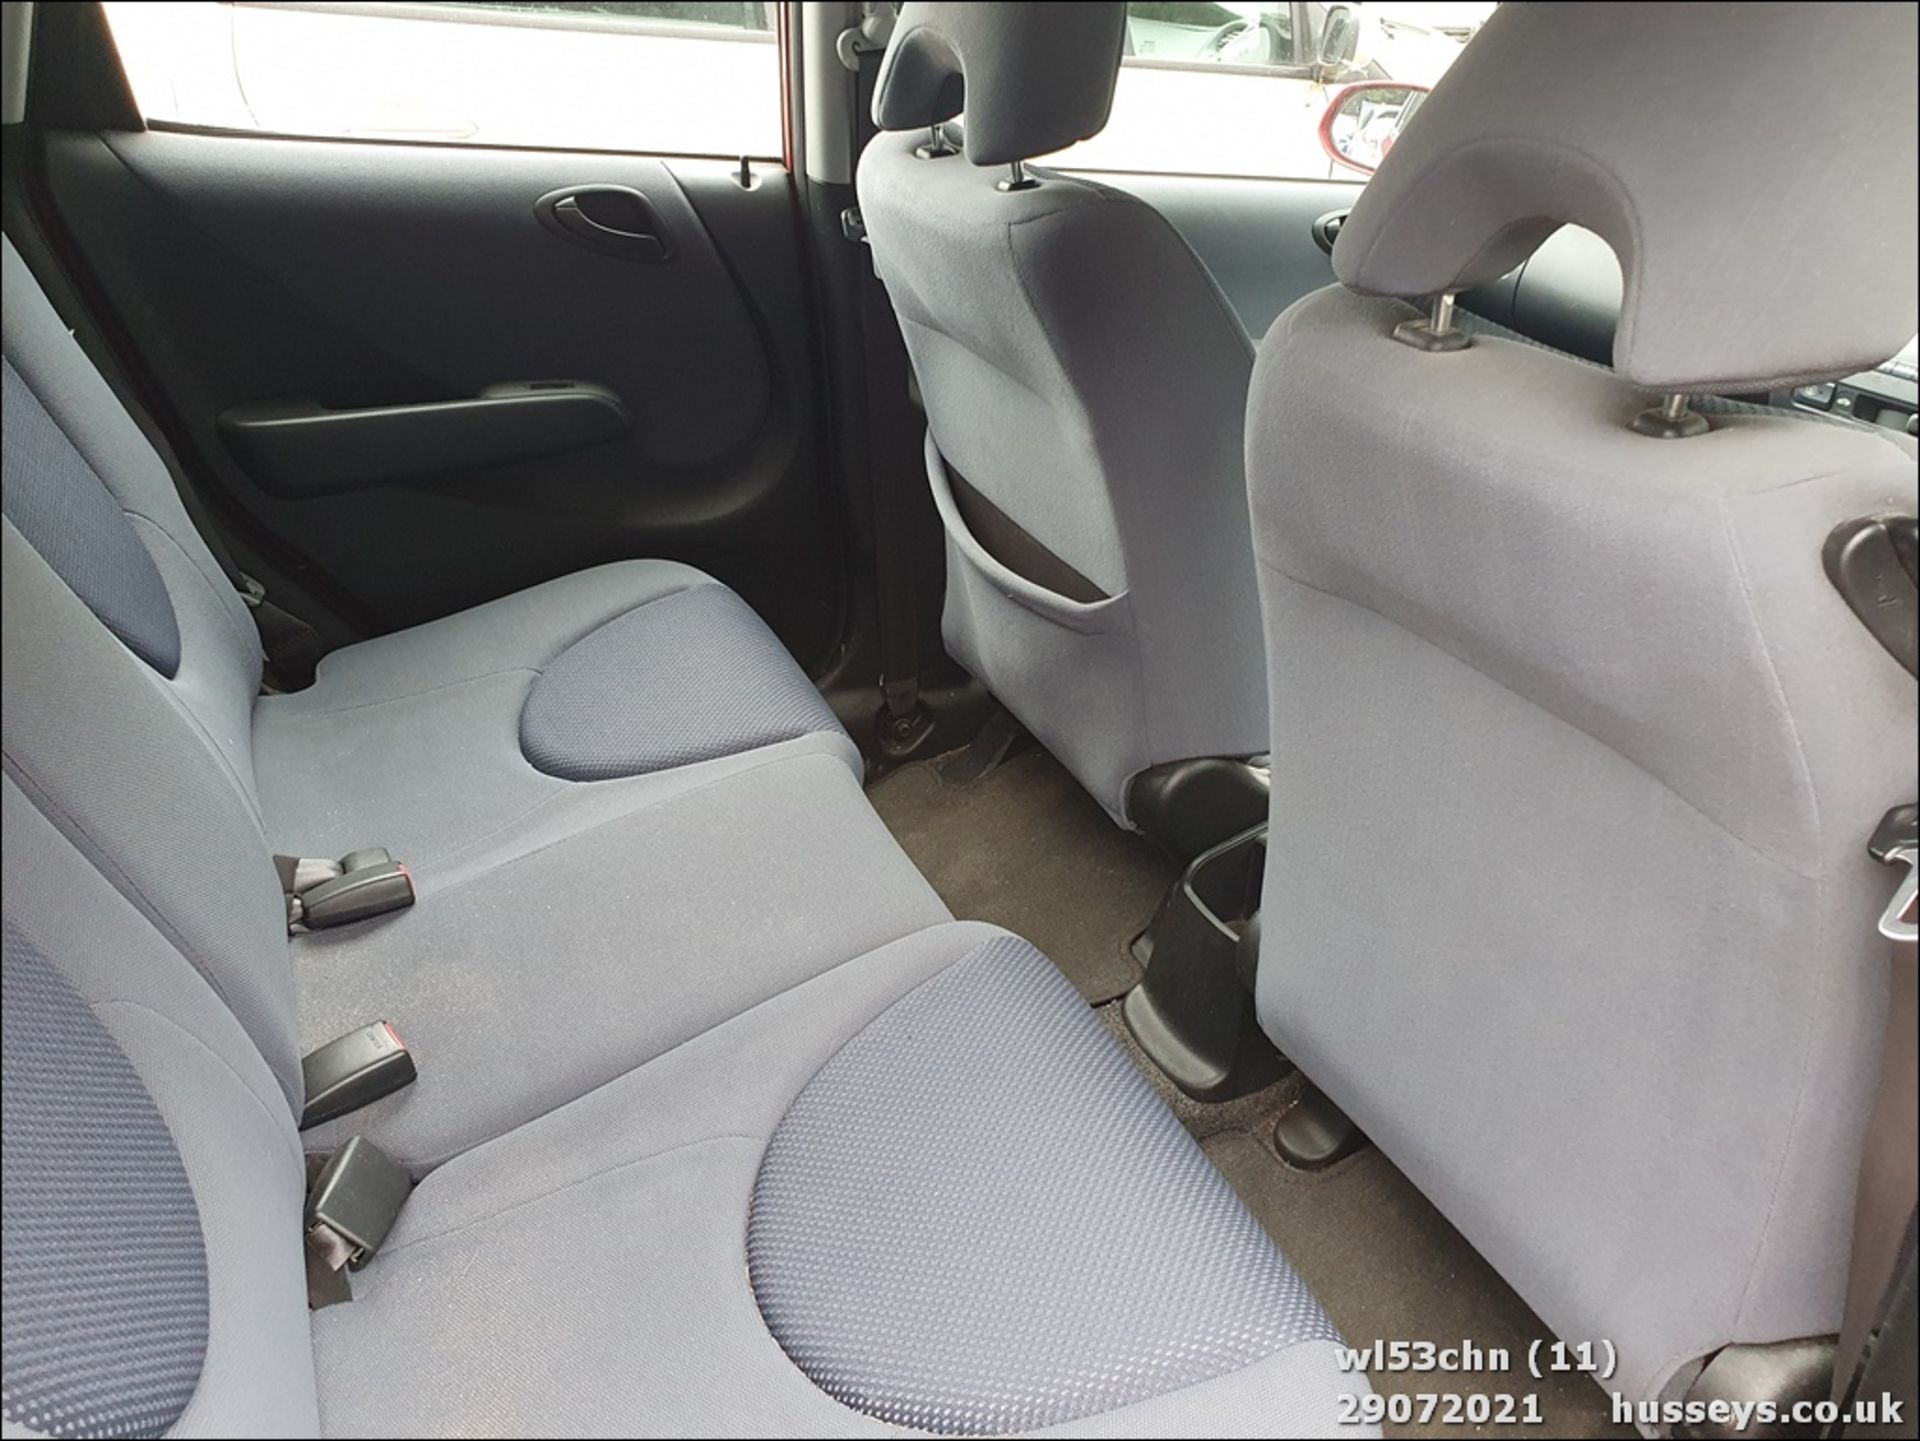 03/53 HONDA JAZZ SE CVT - 1339cc 5dr Hatchback (Red, 168k) - Image 12 of 14